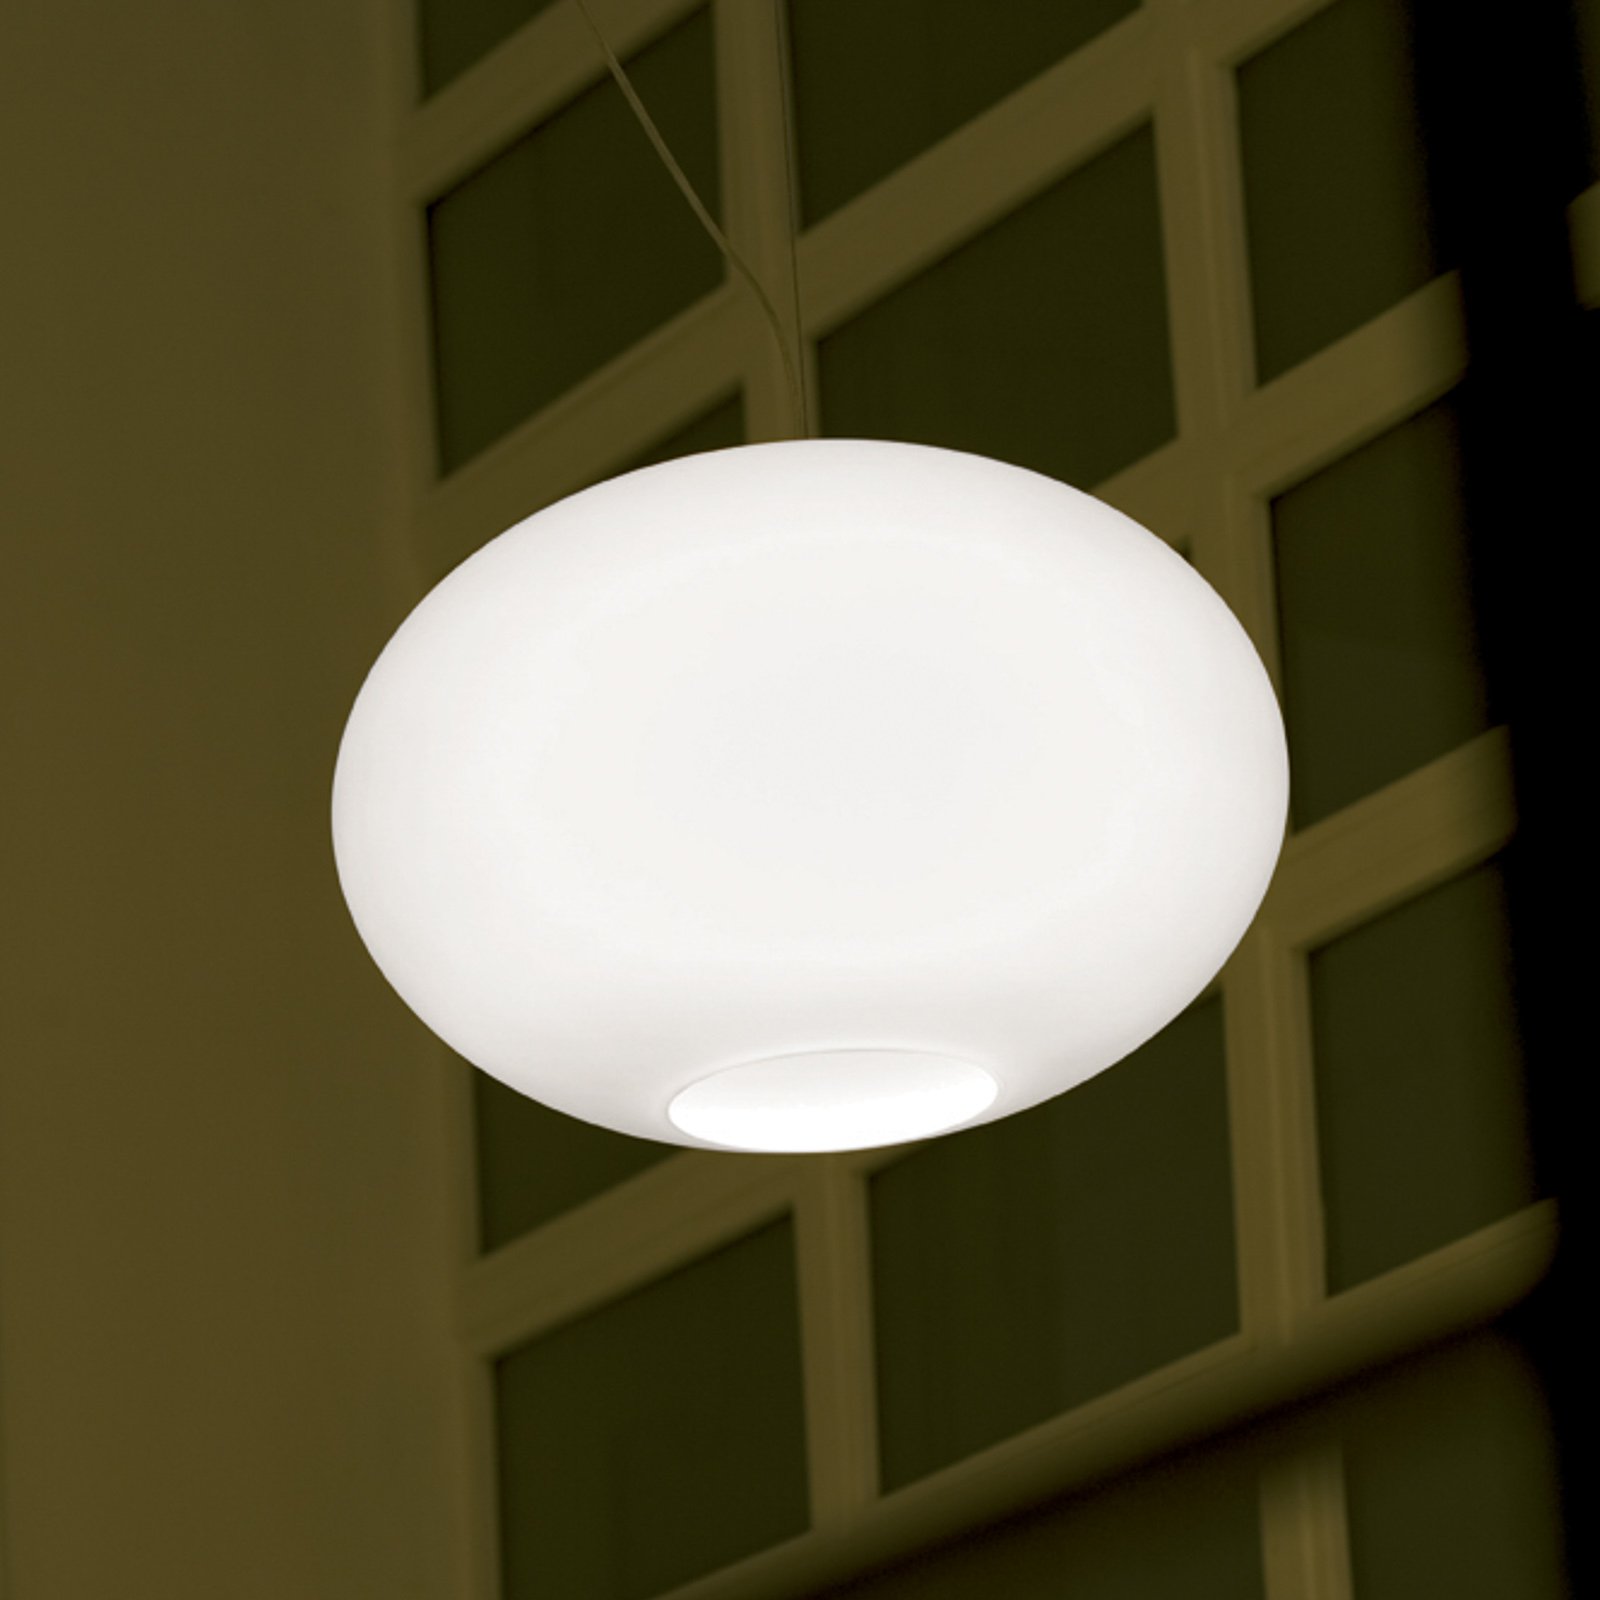 Prandina Zero S5 függő lámpa, opálüveg, Ø 35 cm